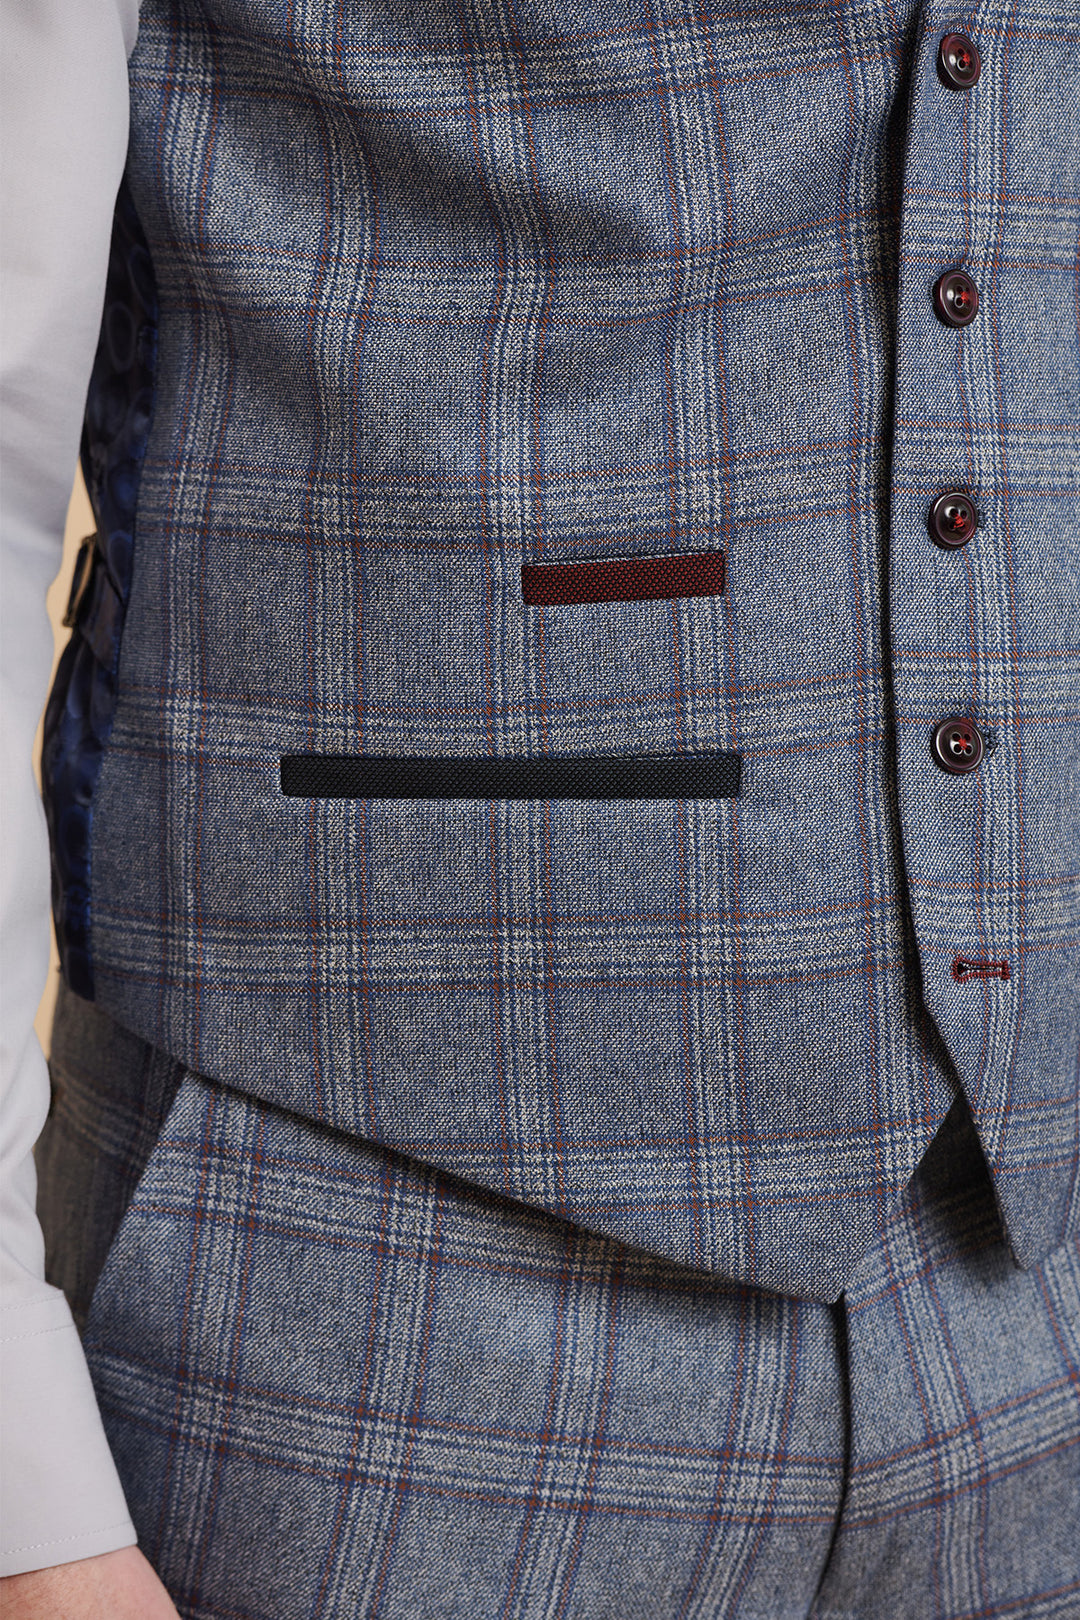 ABBOTT - Blue Tweed Check Three Piece Suit